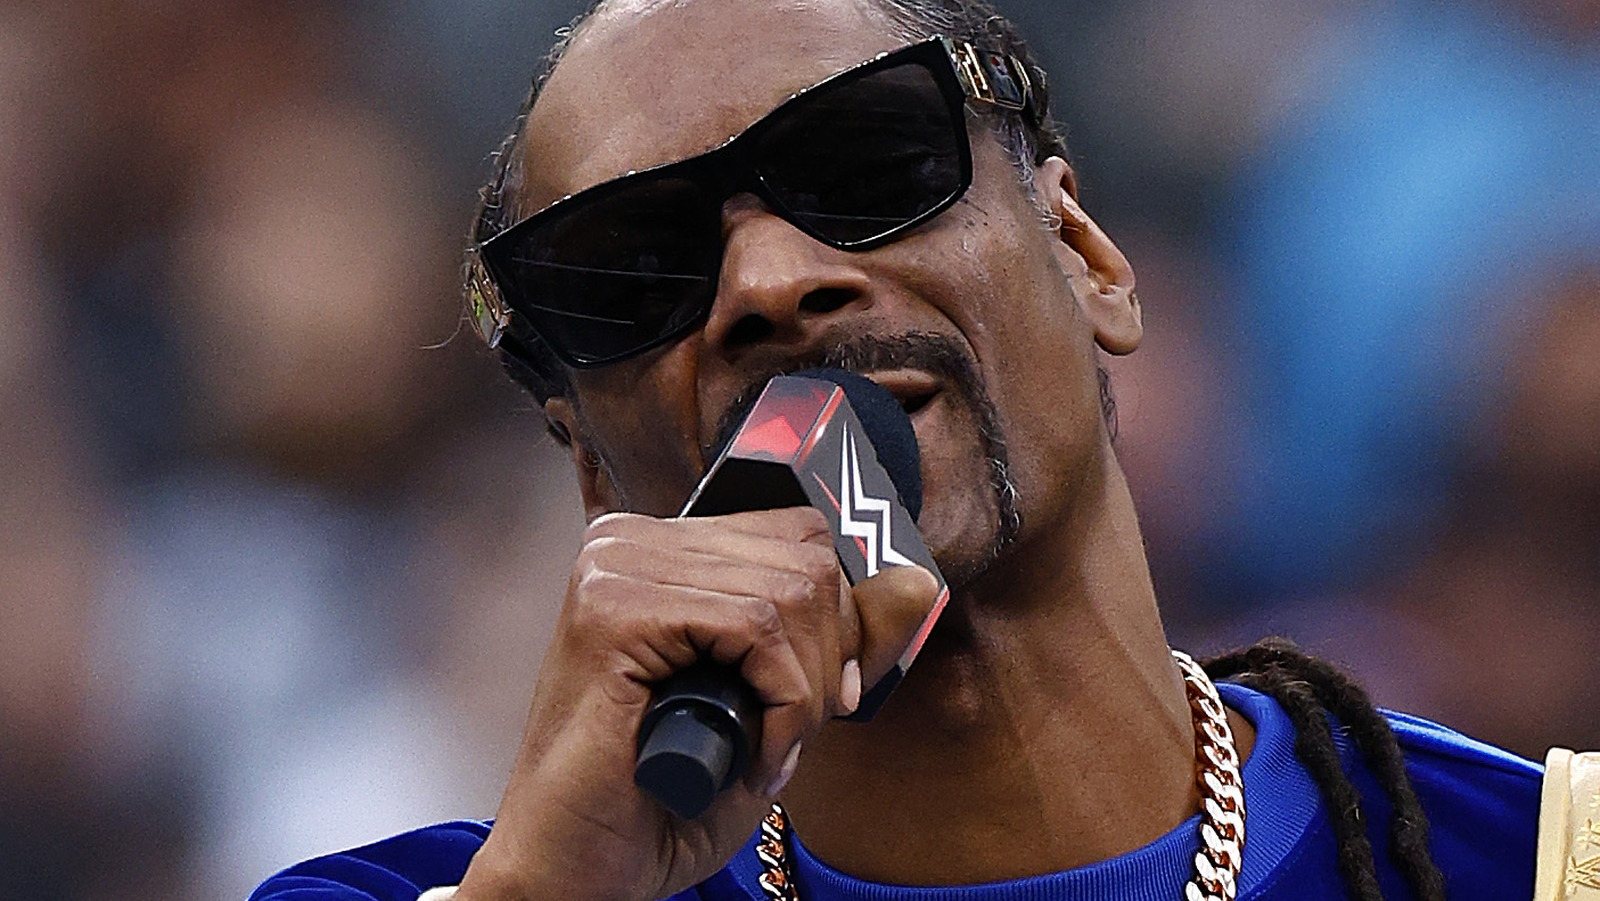 Snoop Dogg sujeta a The Miz en WWE WrestleMania después de improvisar para salvar un segmento